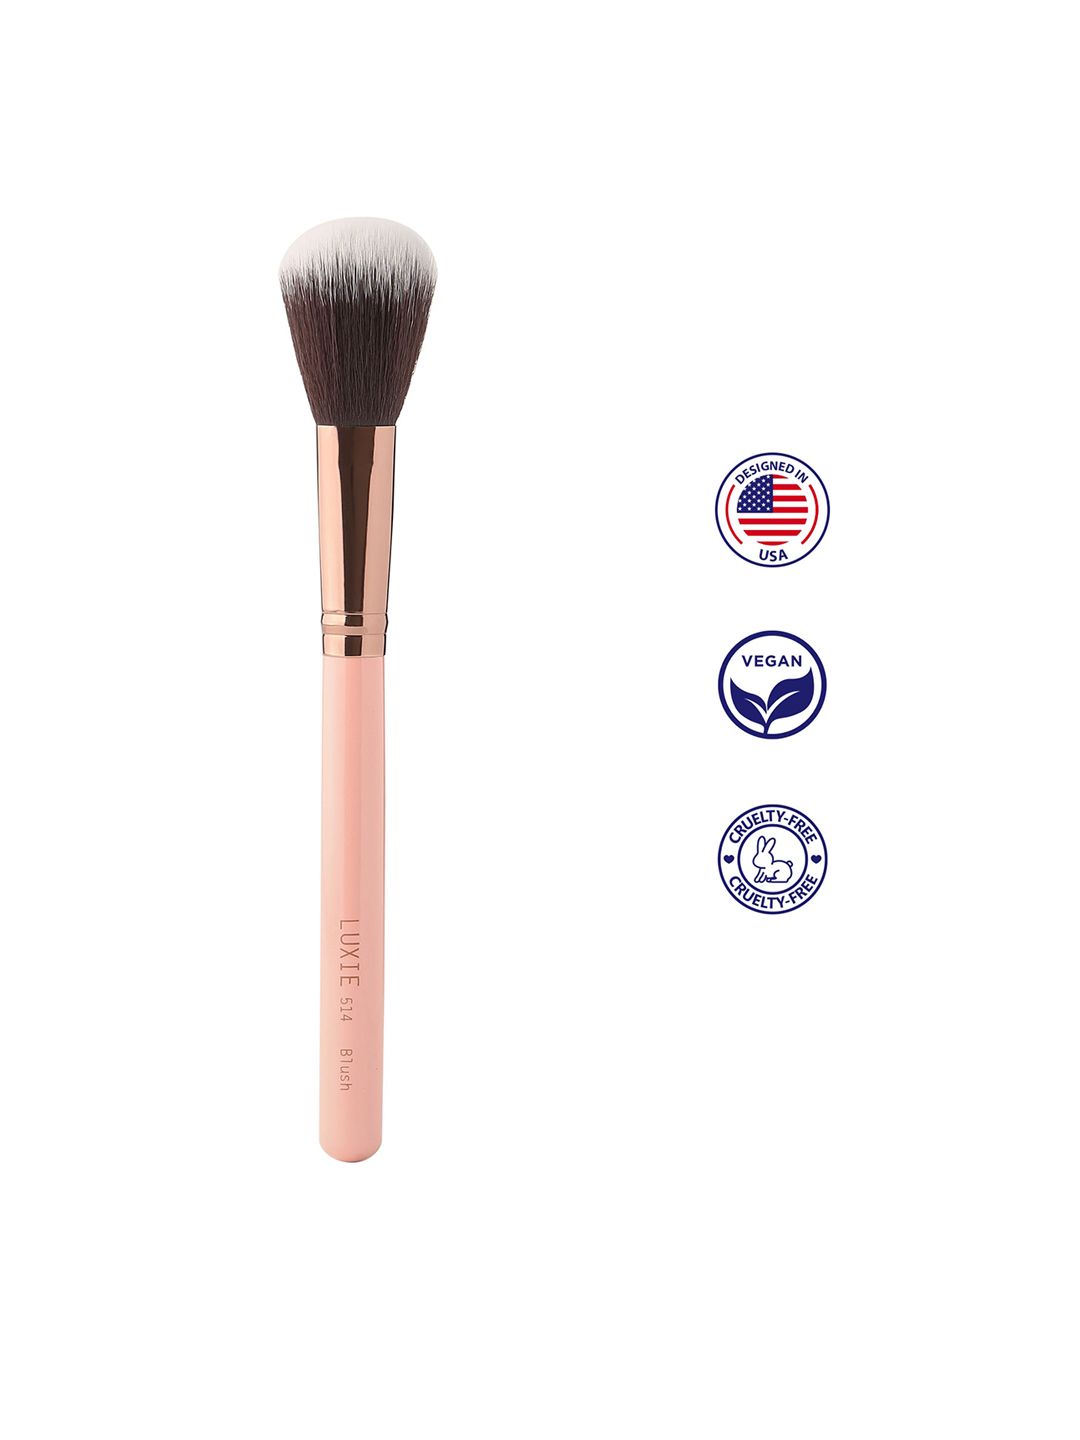 LUXIE Premium Soft Blush Brush - 514 Rose Gold Price in India